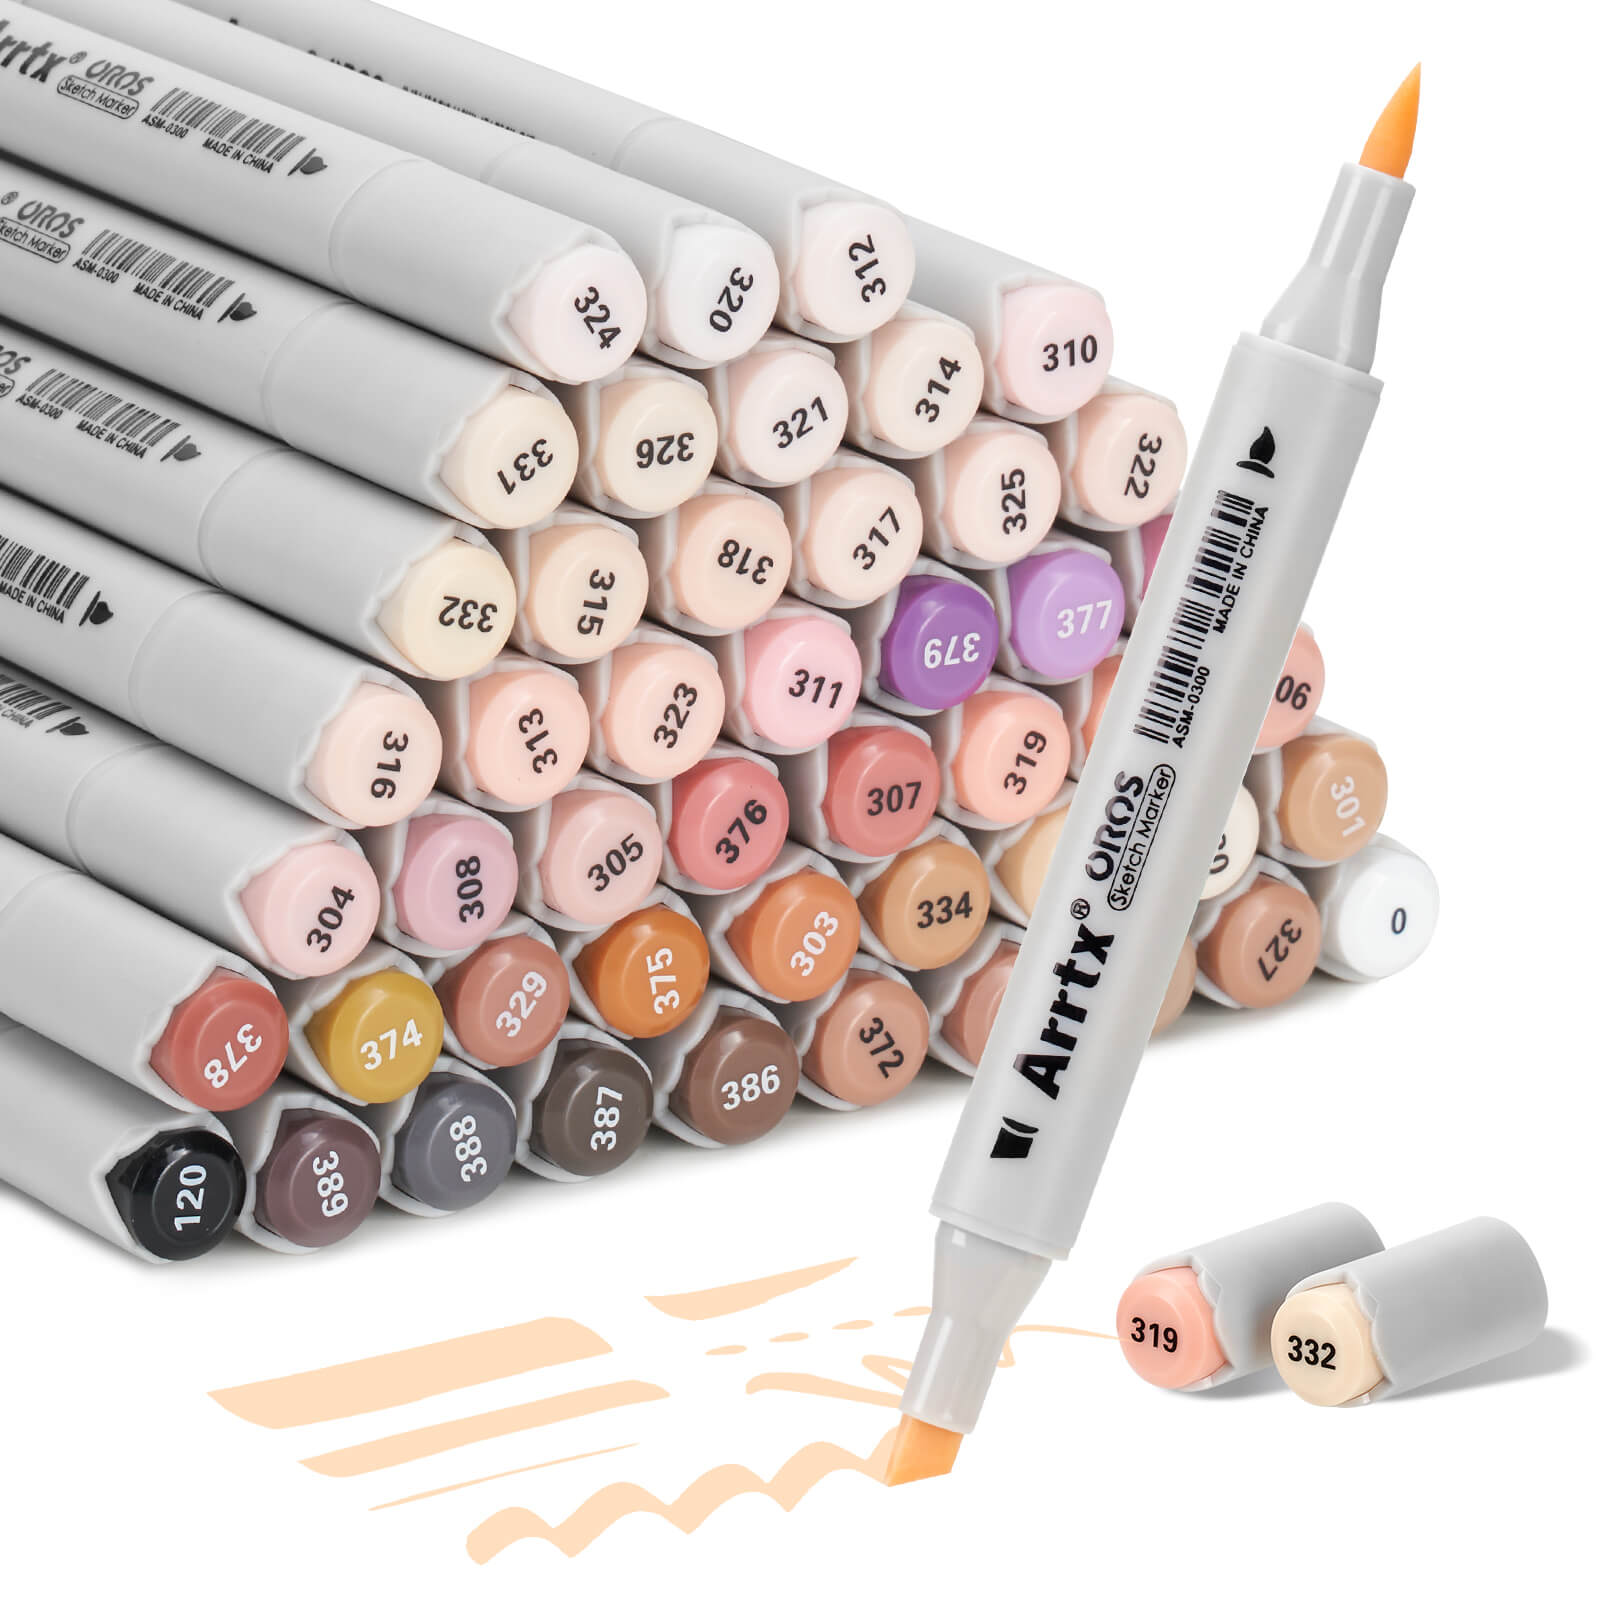 Arrtx OROS 48 Skin Tone Colors Alcohol Markers Paint Pen Set